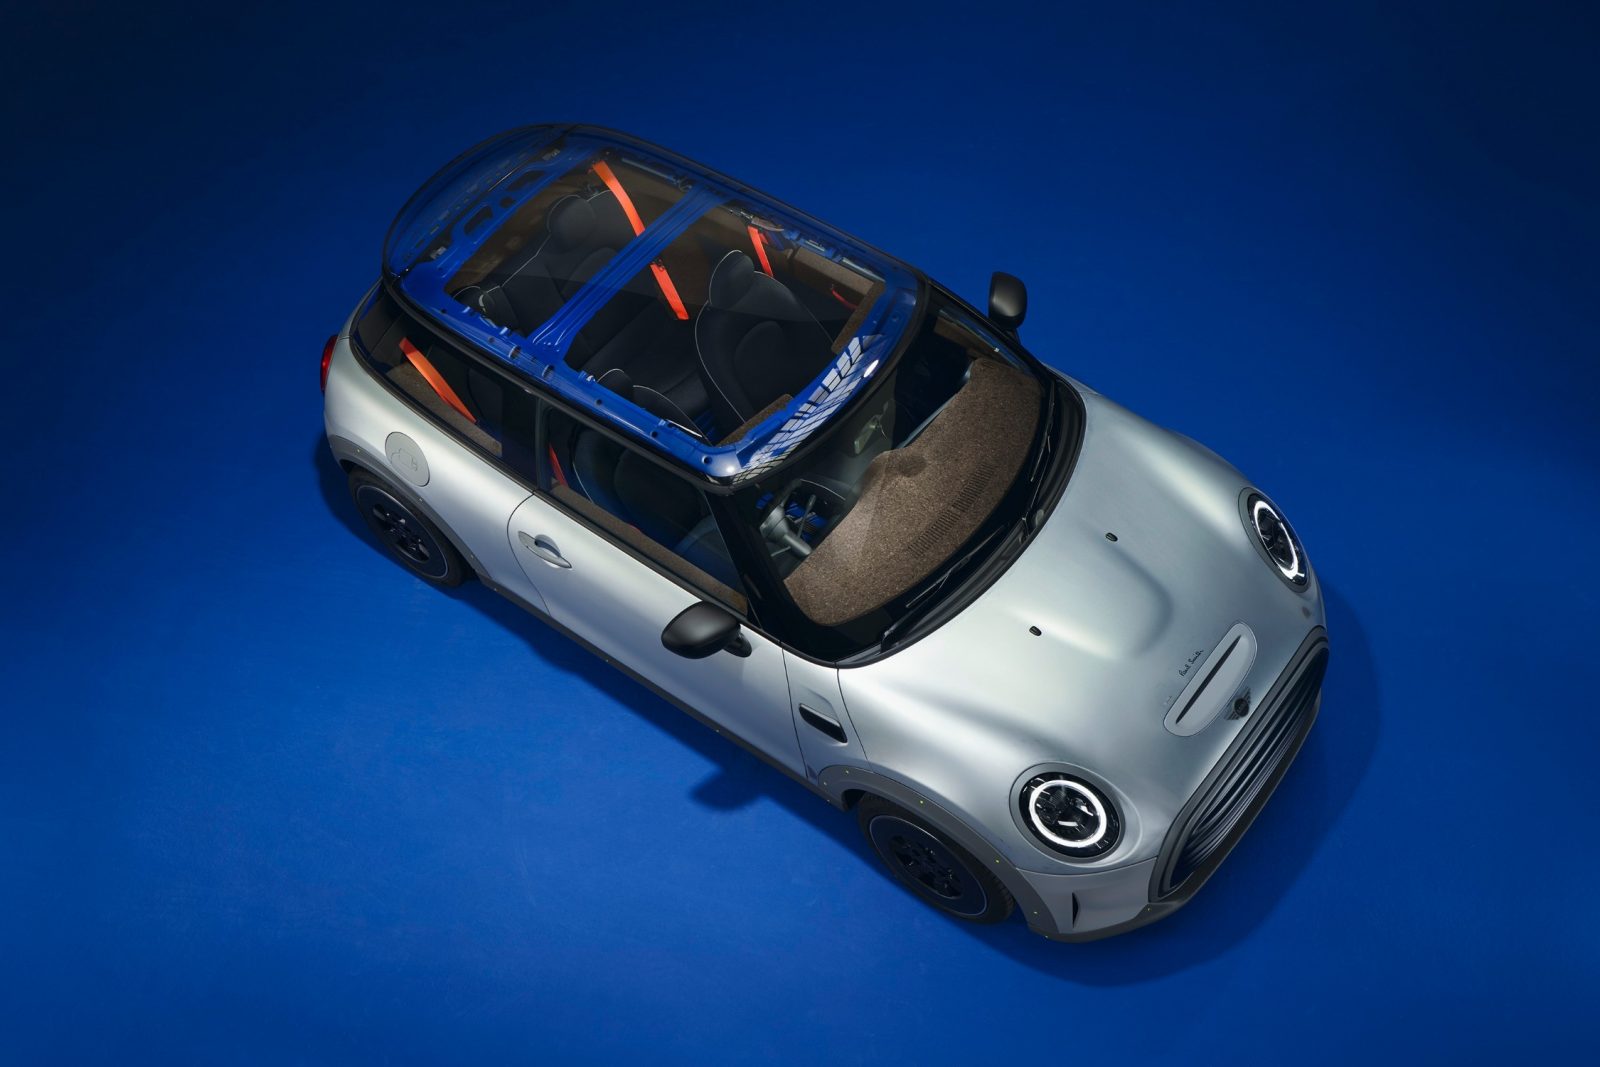 A Mini bemutatta, milyen lenne egy autó, ha minden nélkülözhető berendezést kihagynának belőle